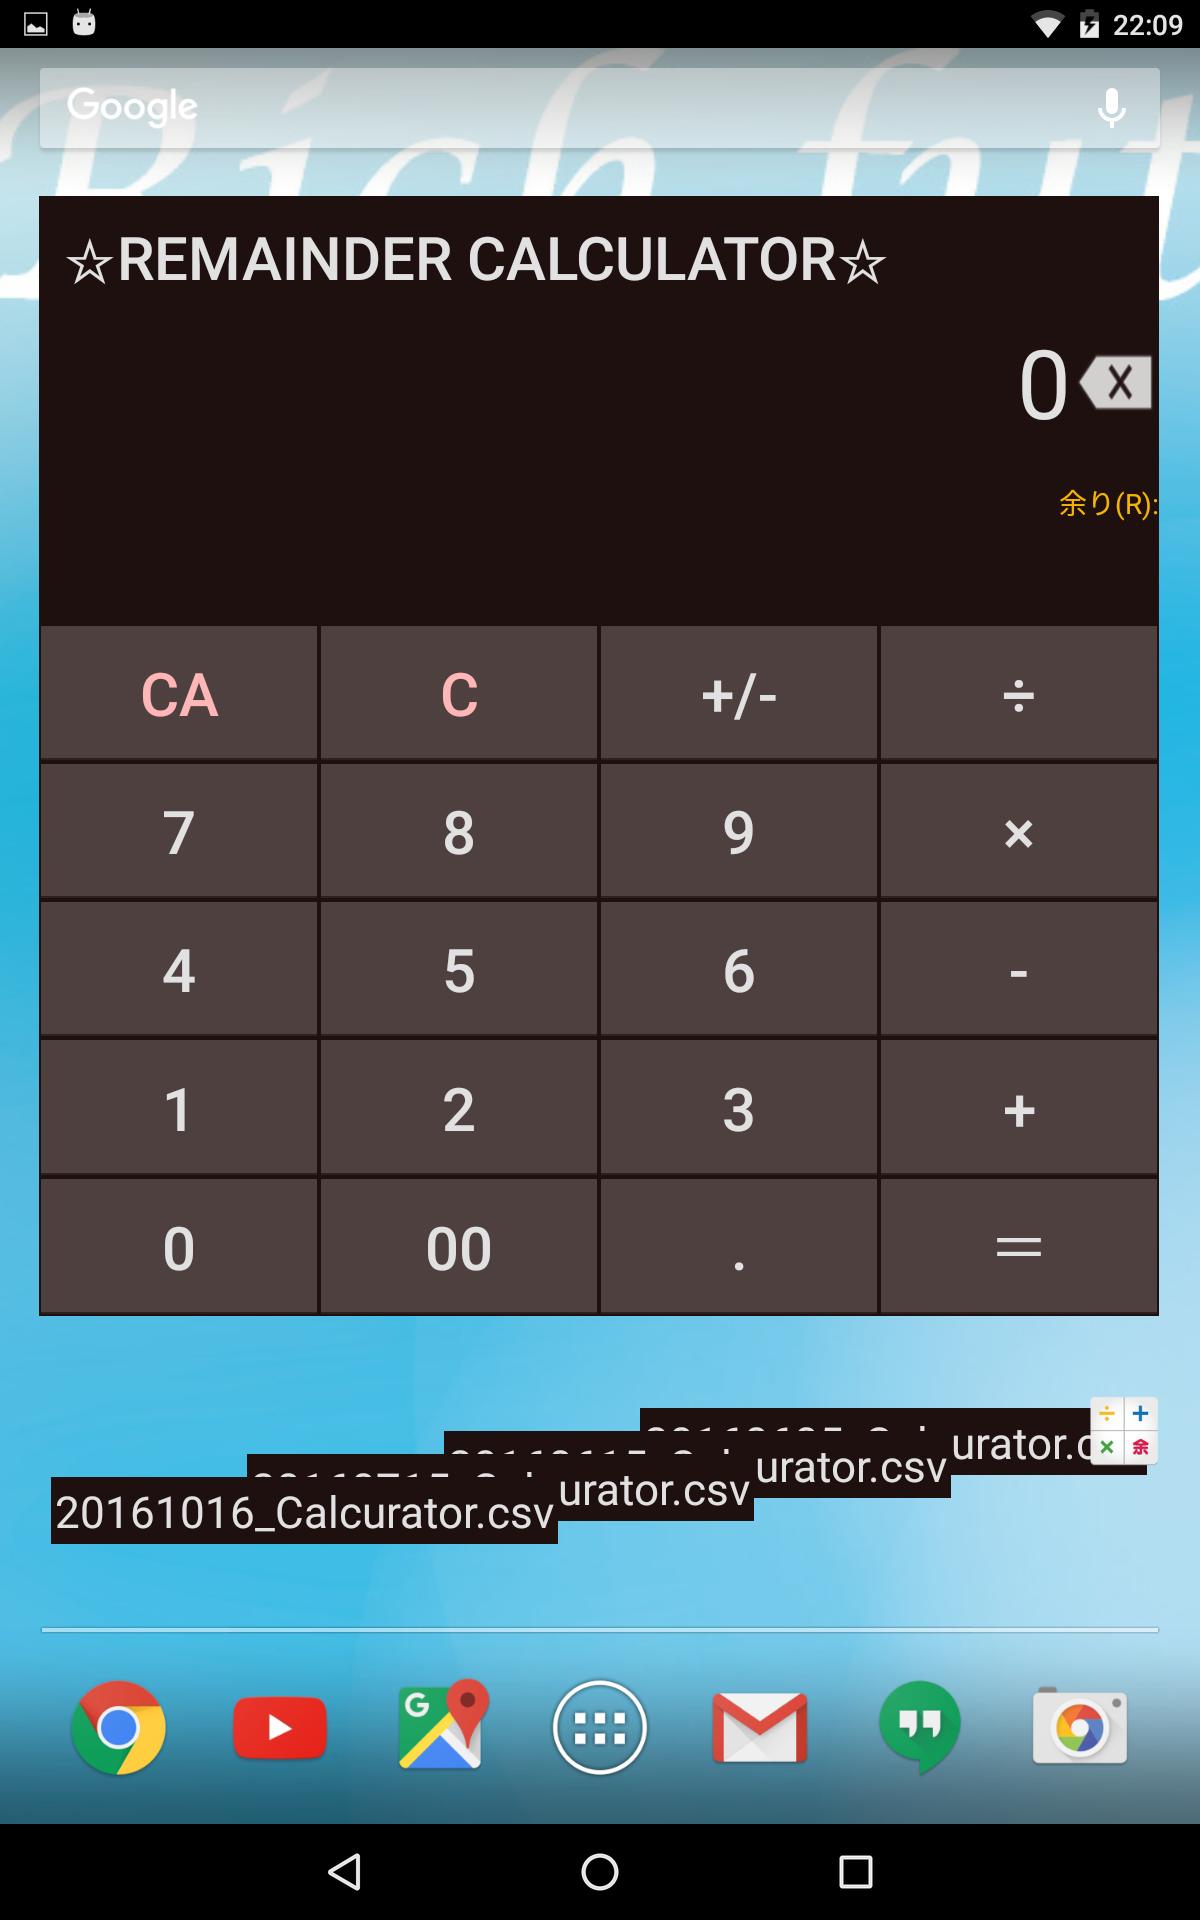 Калькулятор с остатком. Div Mod калькулятор. Самый красивый калькулятор для андроид. Калькулятор деления.